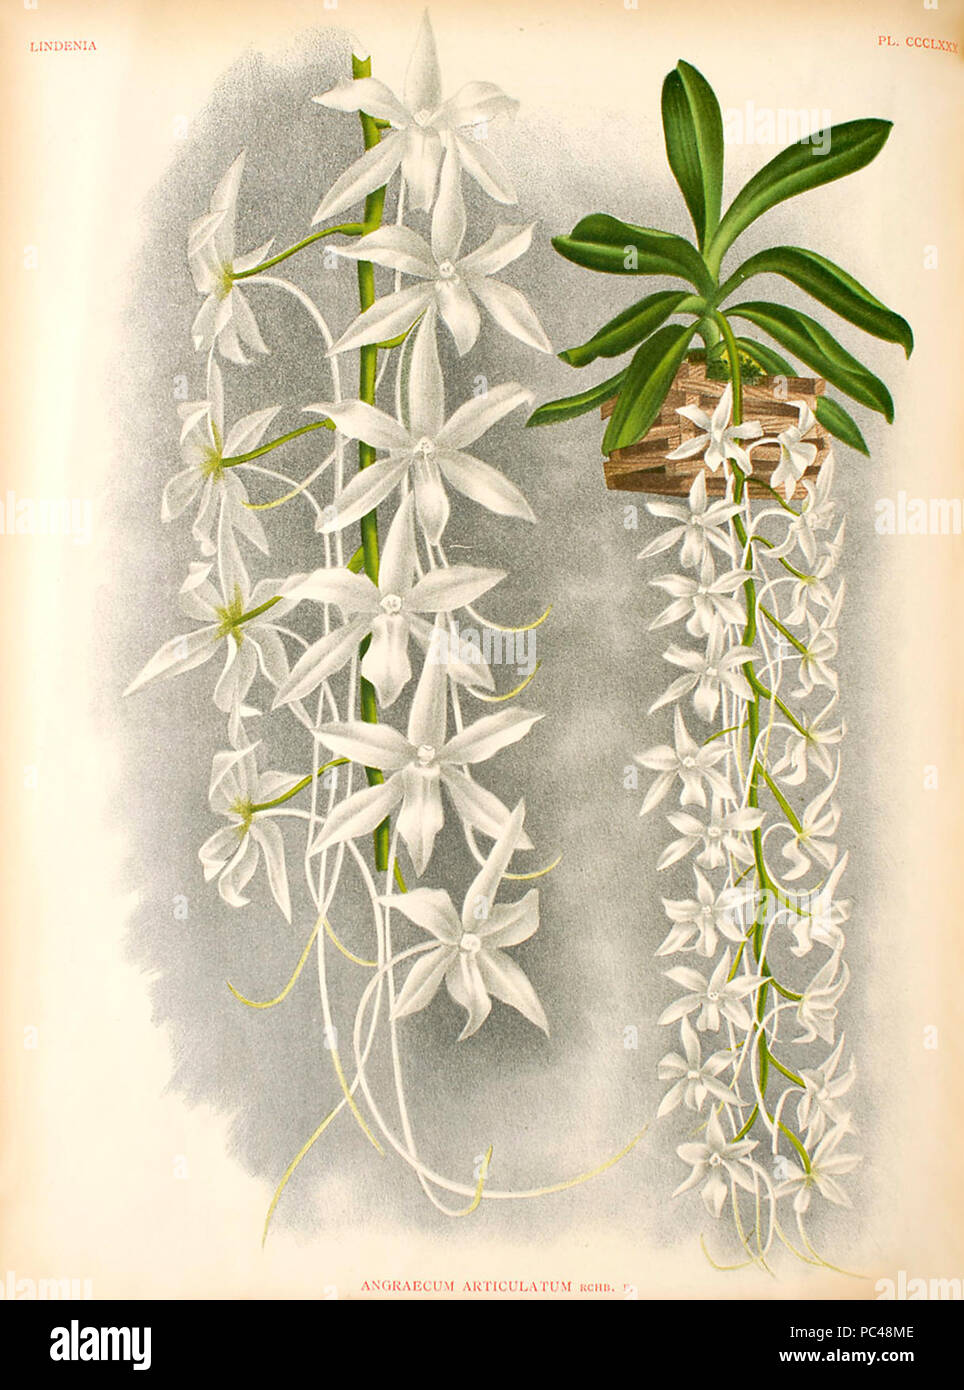 Aerangis articulata. Stock Photo